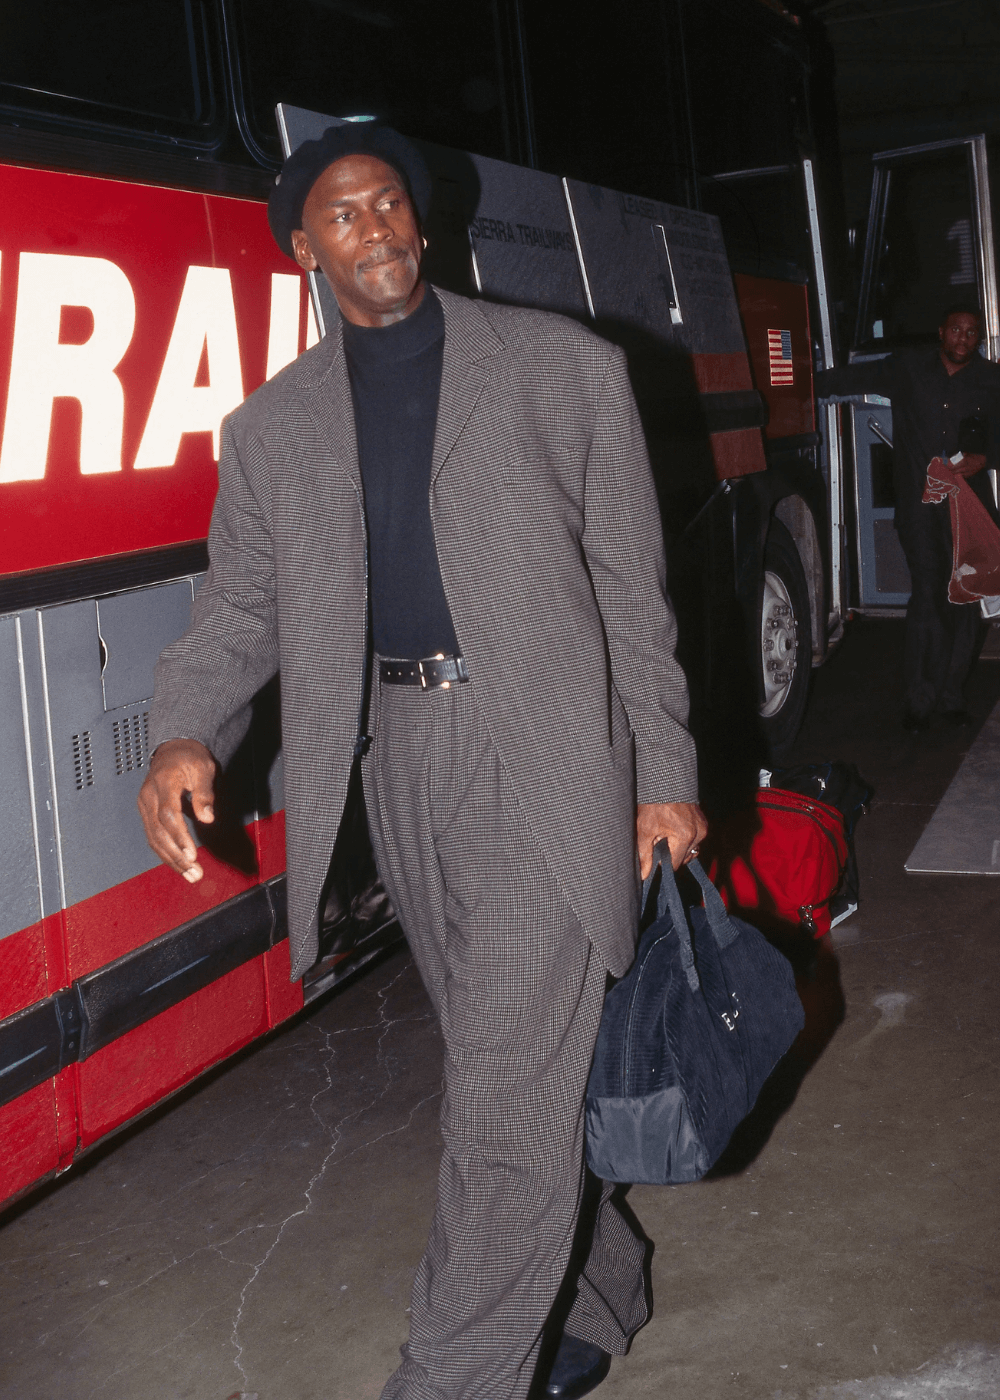 Michael Jordan - terninho cinza, boina e mala preta - moda e esporte - inverno - homem negro de boina andando com uma mala nas mãos - https://stealthelook.com.br